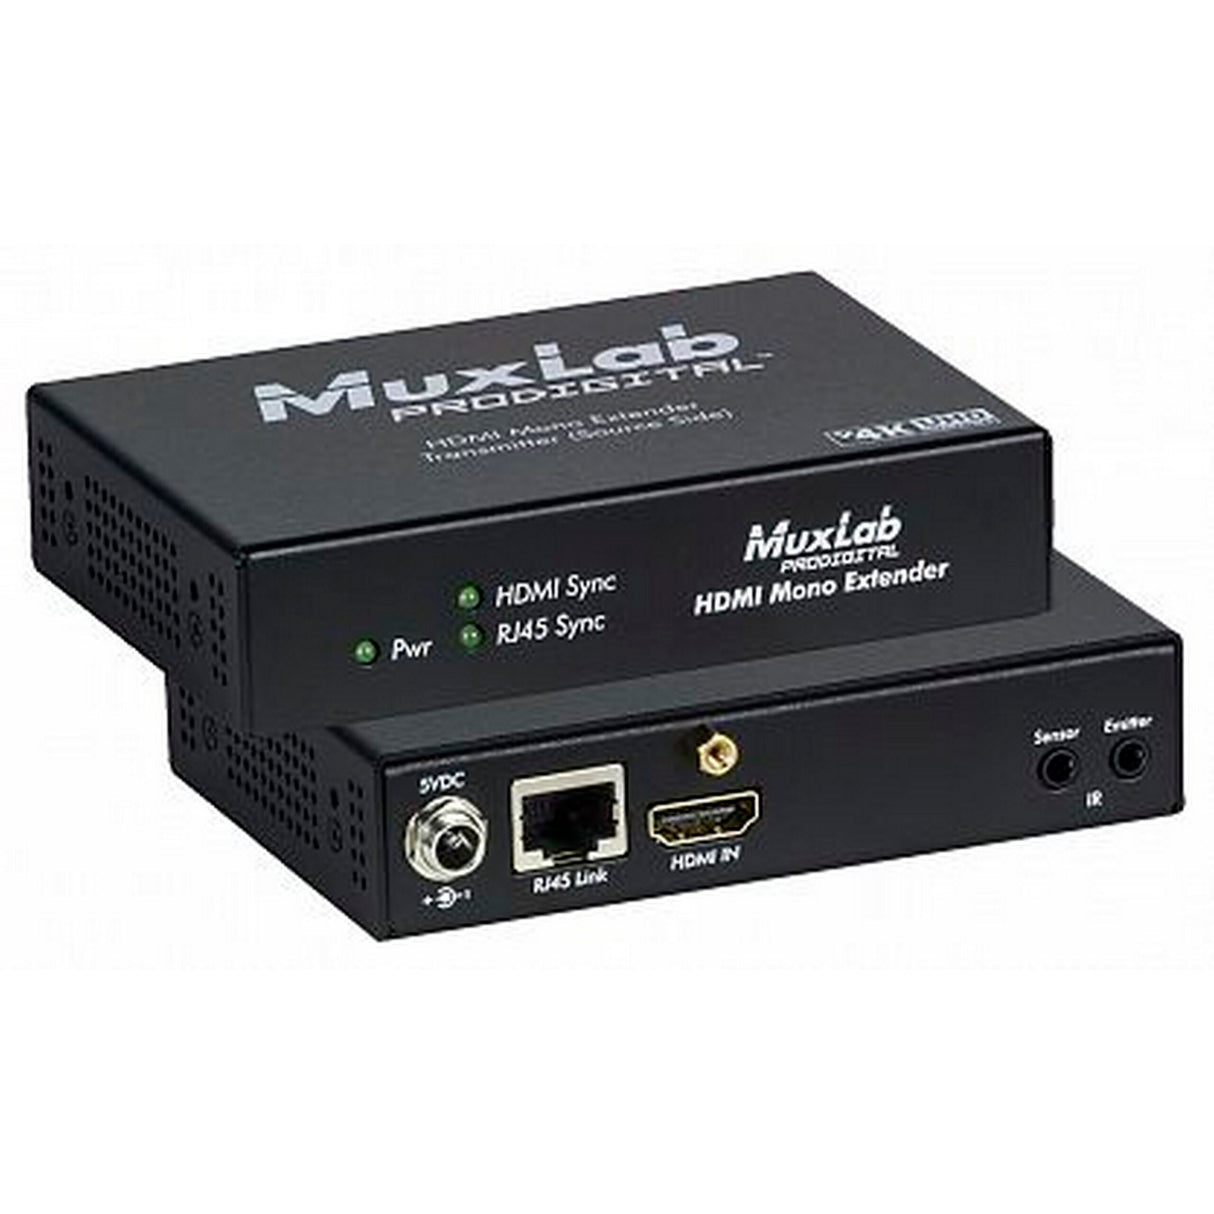 MuxLab 500451-TX HDMI Transmitter, 110-220V